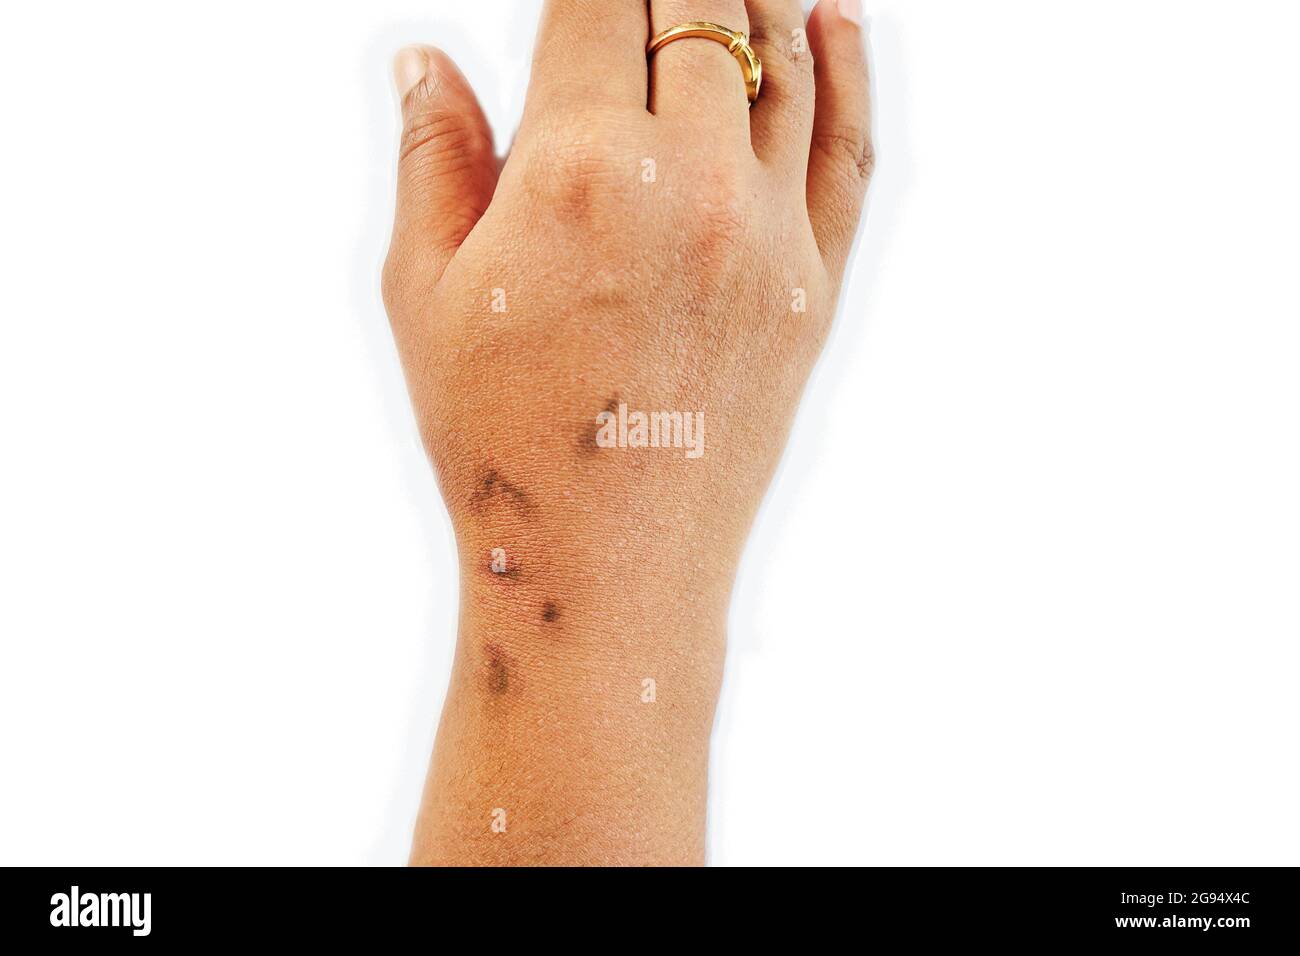 Trockene, dehydrierte und rissige Haut der asiatischen Frauen Hand mit schwarzen Marken Dermatitis Problem des Ausschlags, Allergieausschlag Stockfoto